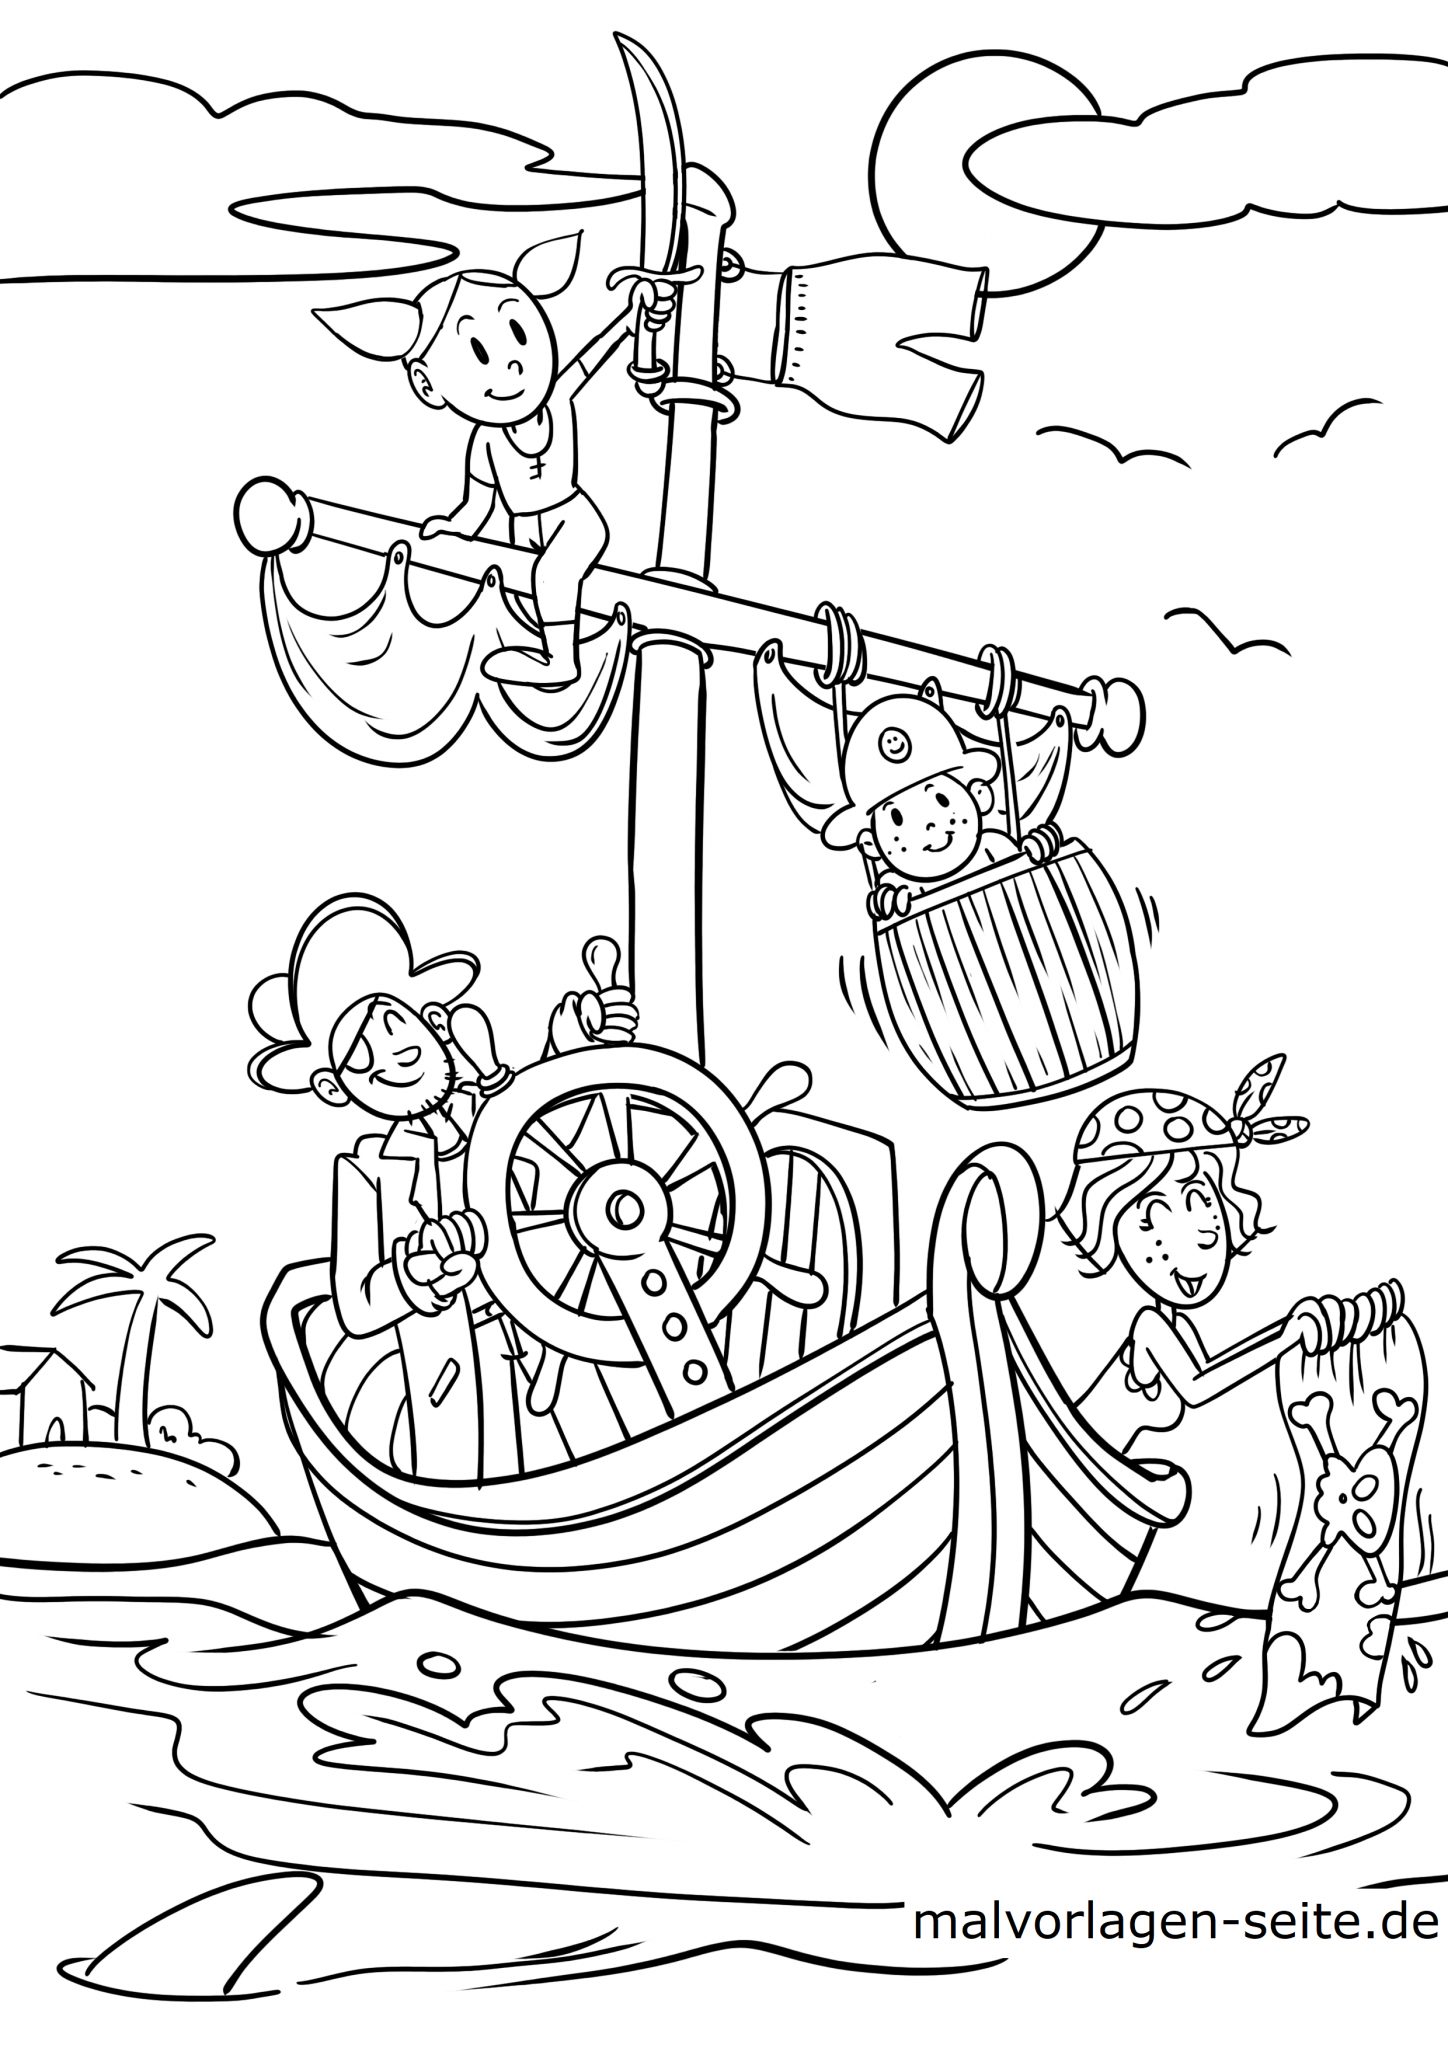 Раскраска пираты для детей